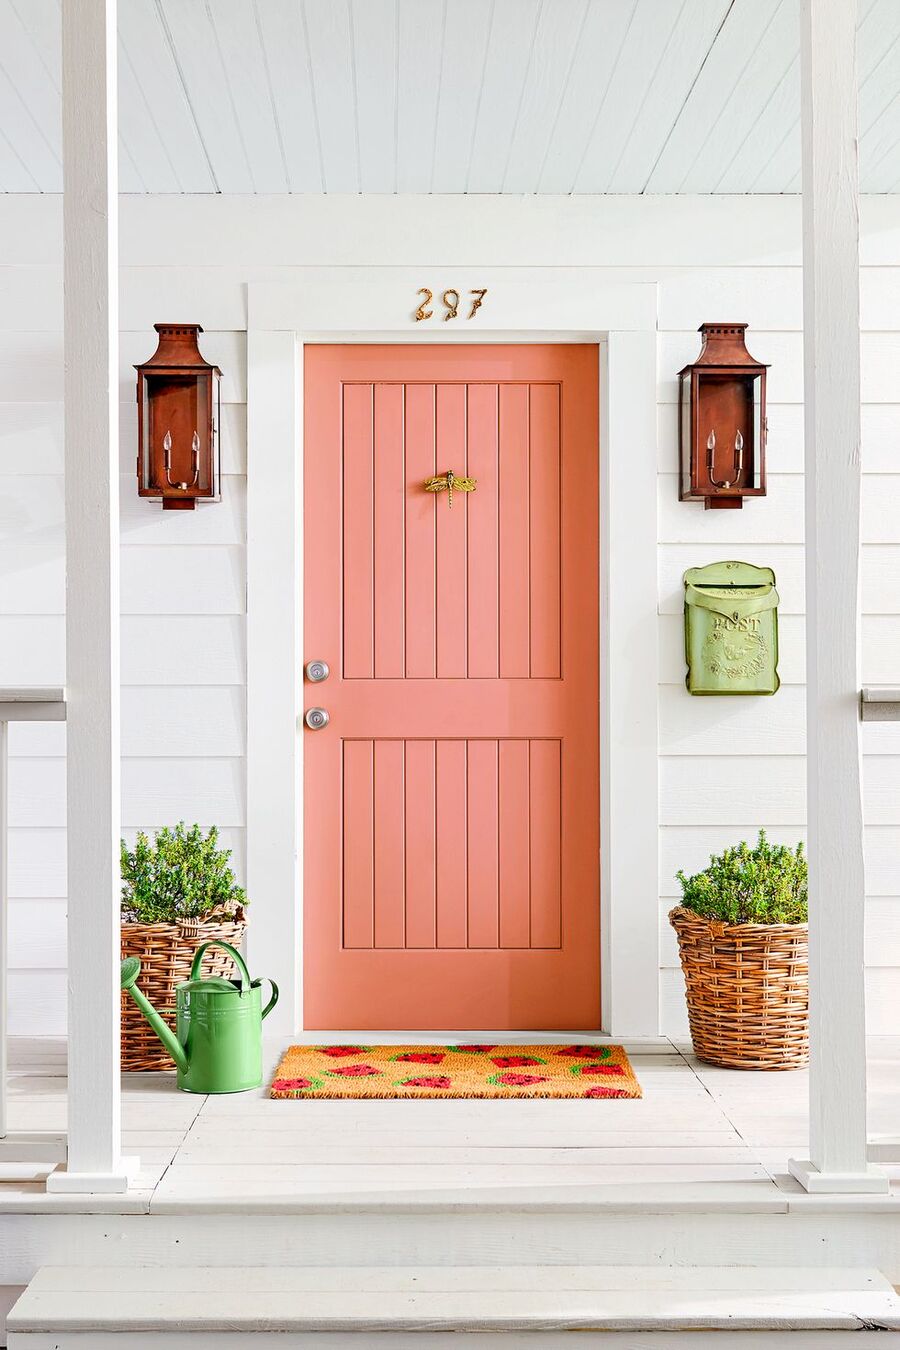 Puerta de entrada a una casa en color rosado. El techo, los muros y el piso son blancos. A cada costado de la puerta hay unos focos en color rojizo, dos canastos de mimbre con plantas, una regadera verde y un buzón verde claro. También hay un limpiapiés con diseño de sandías. 